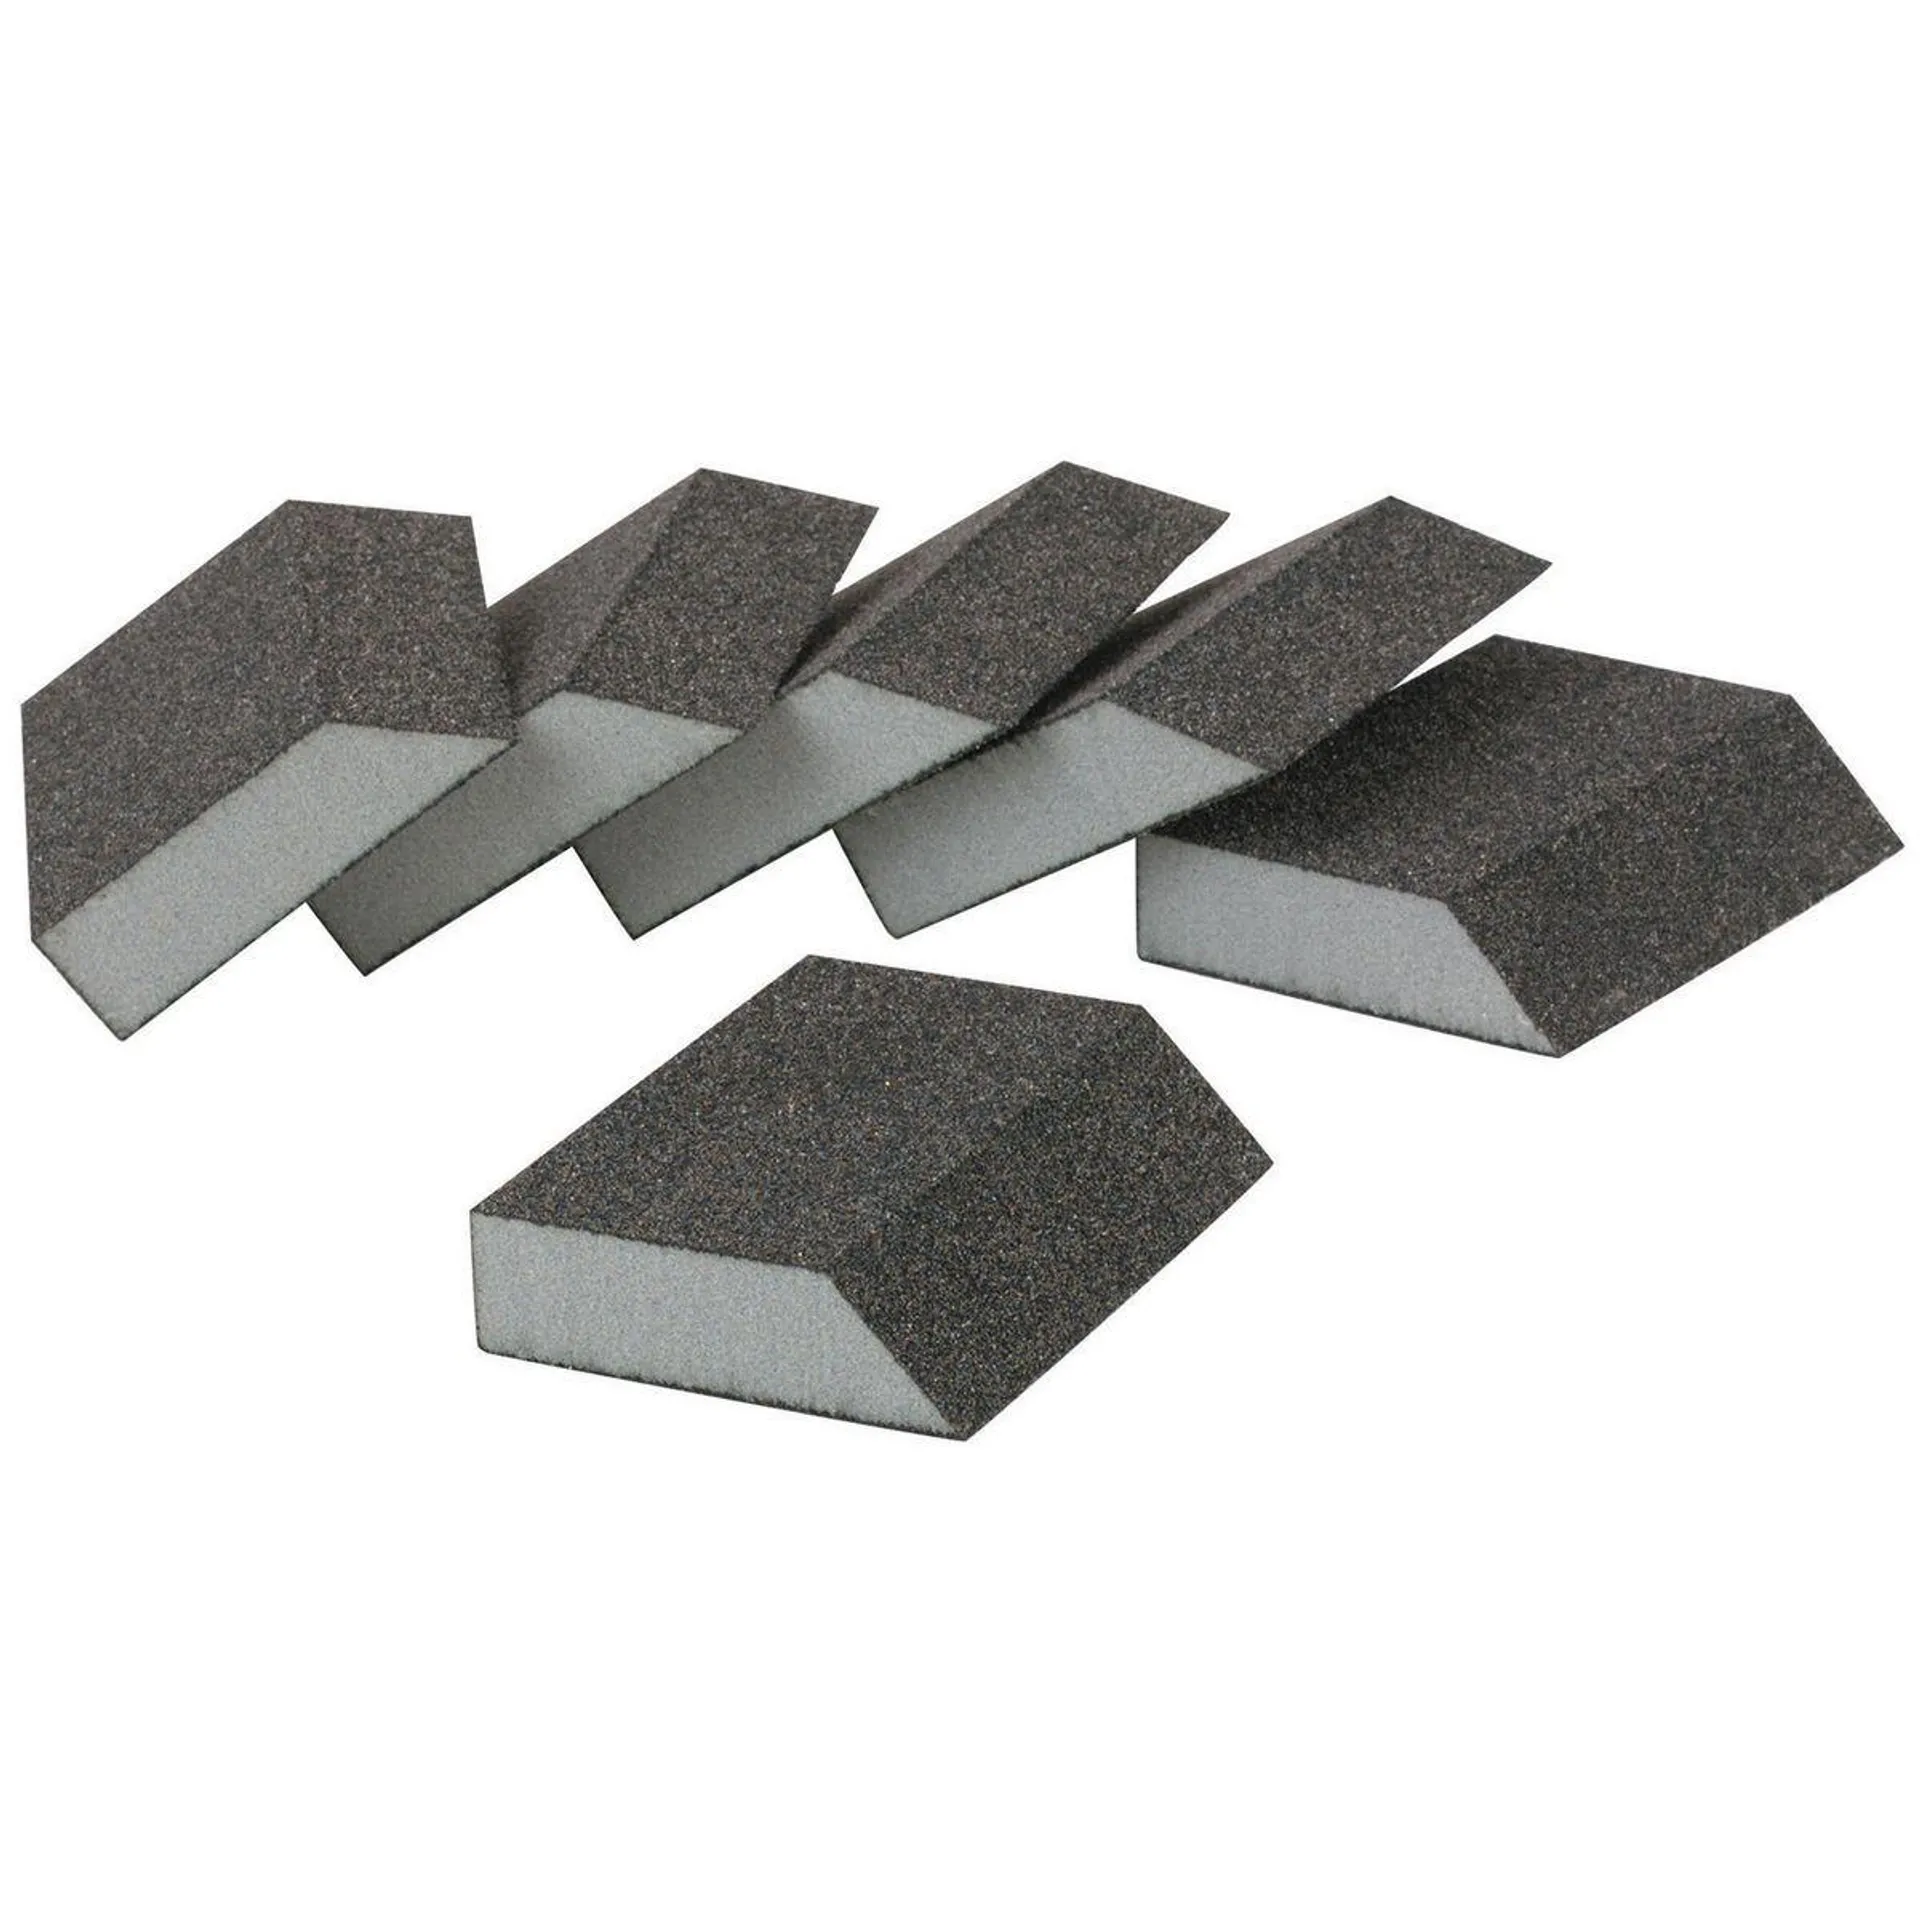 Aluminum Oxide Angled Sanding Sponges - Coarse Grade, 6 Pack